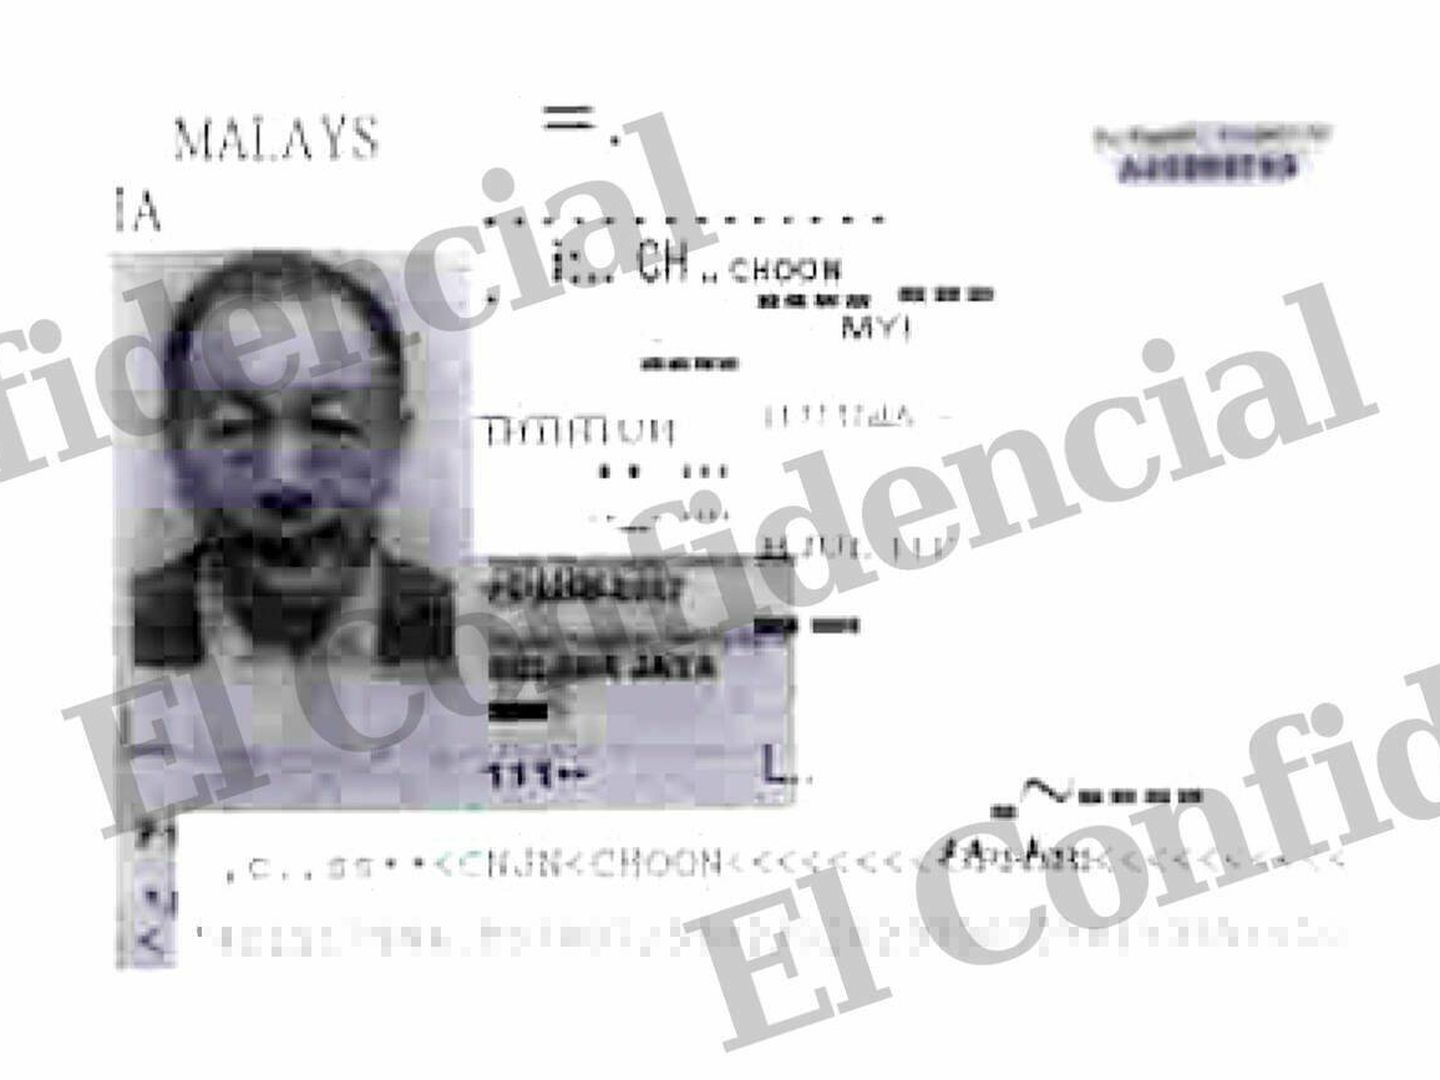 La fotografía de San Chin Choon que obra en el sumario del caso.